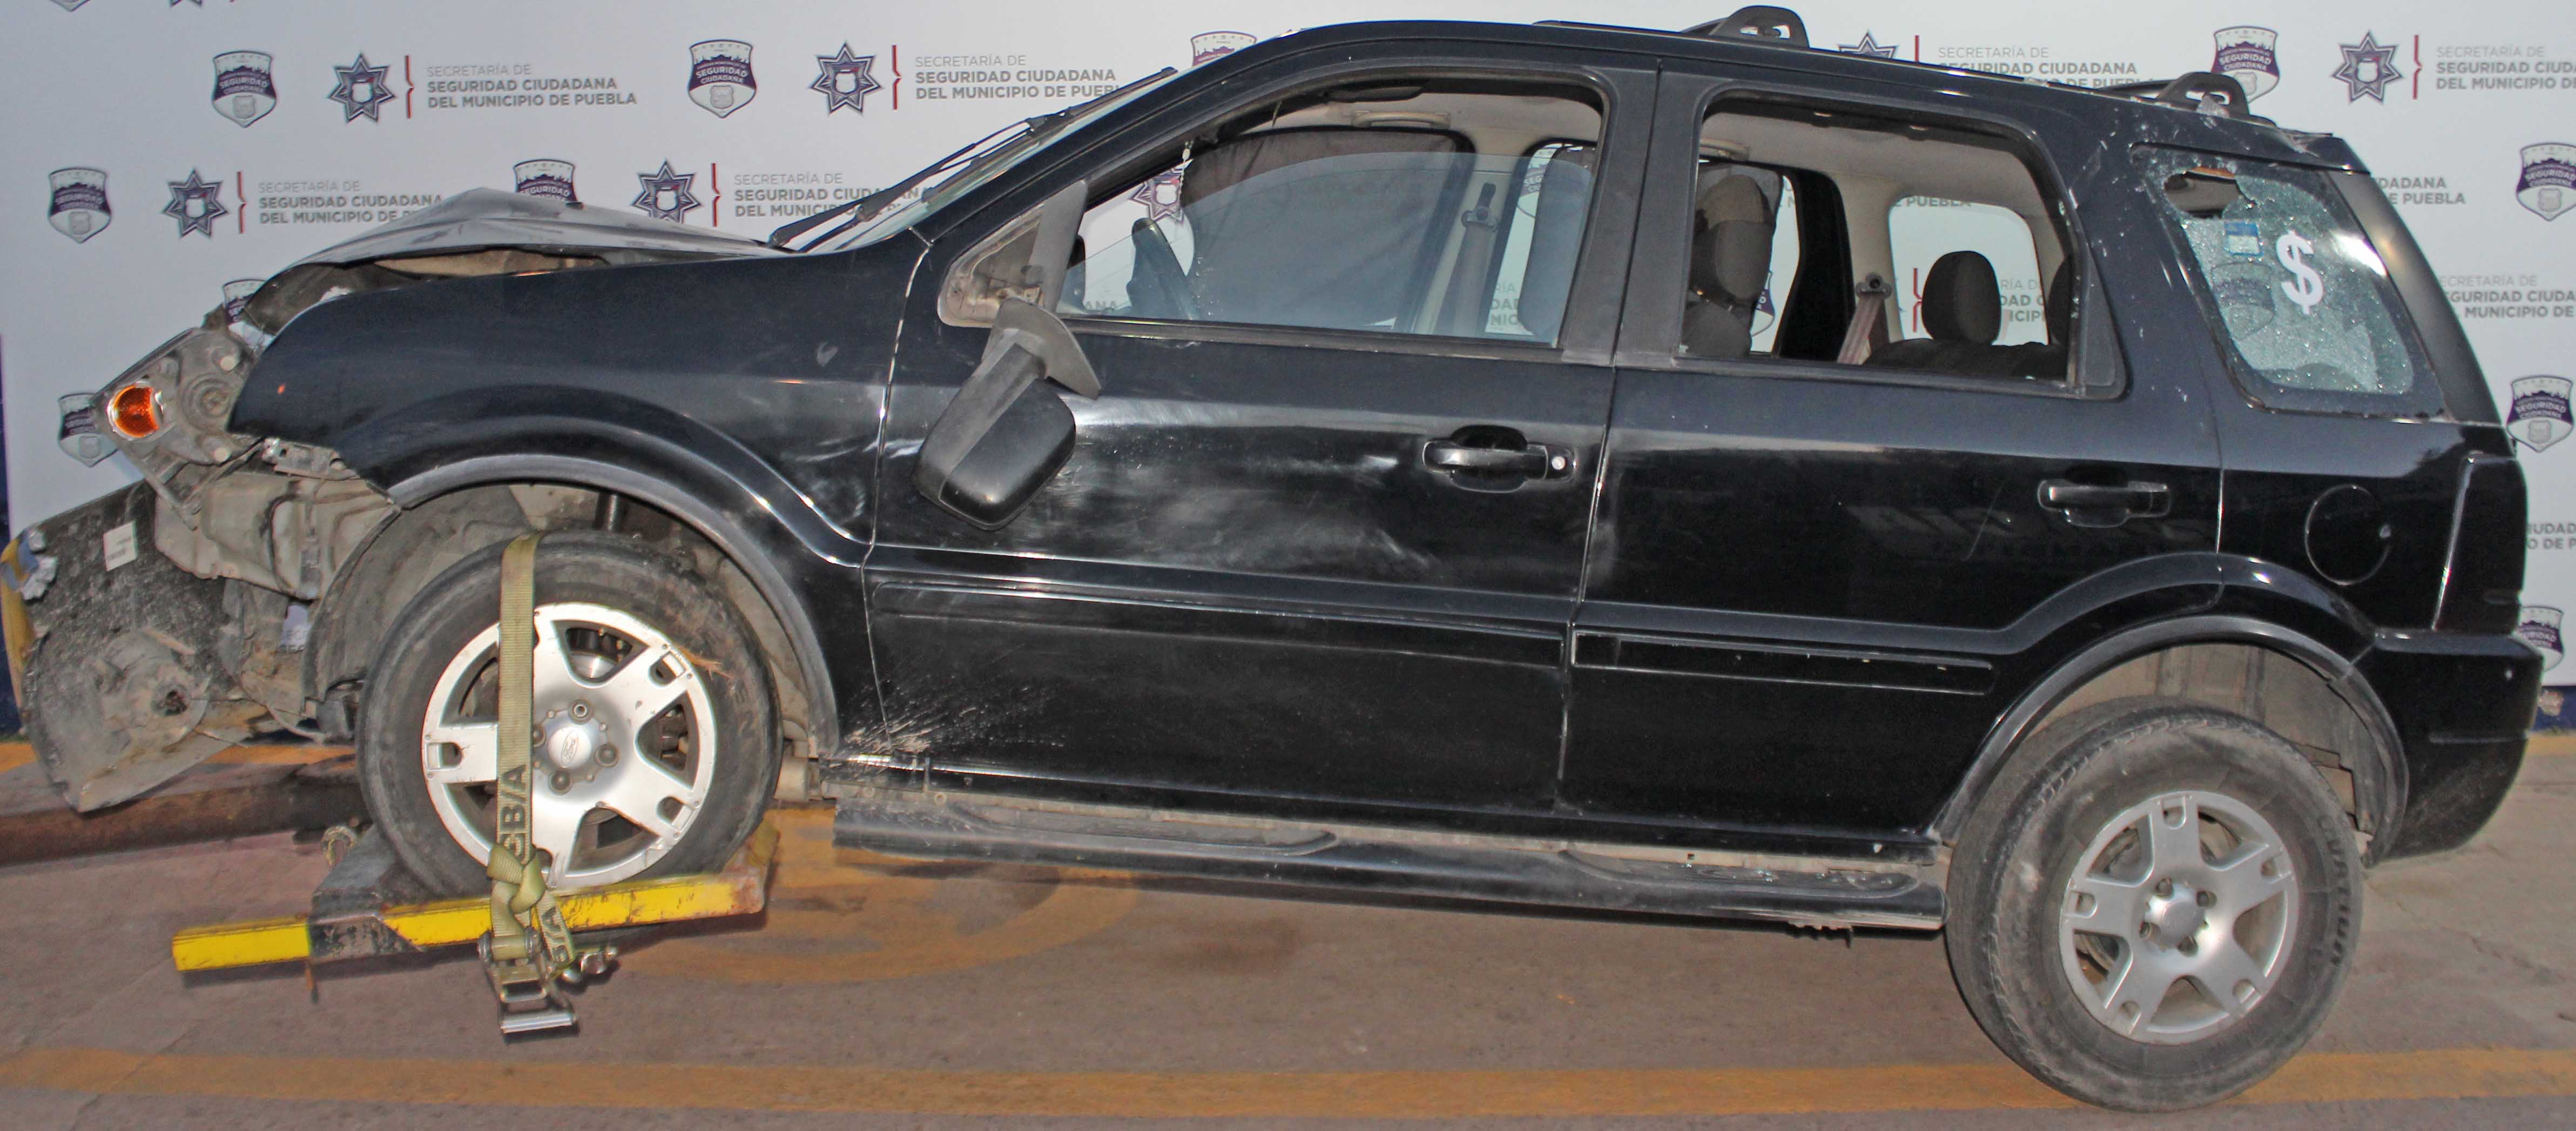 Mediante persecución, detuvo Policía Municipal de Puebla a hombre por robo de vehículo